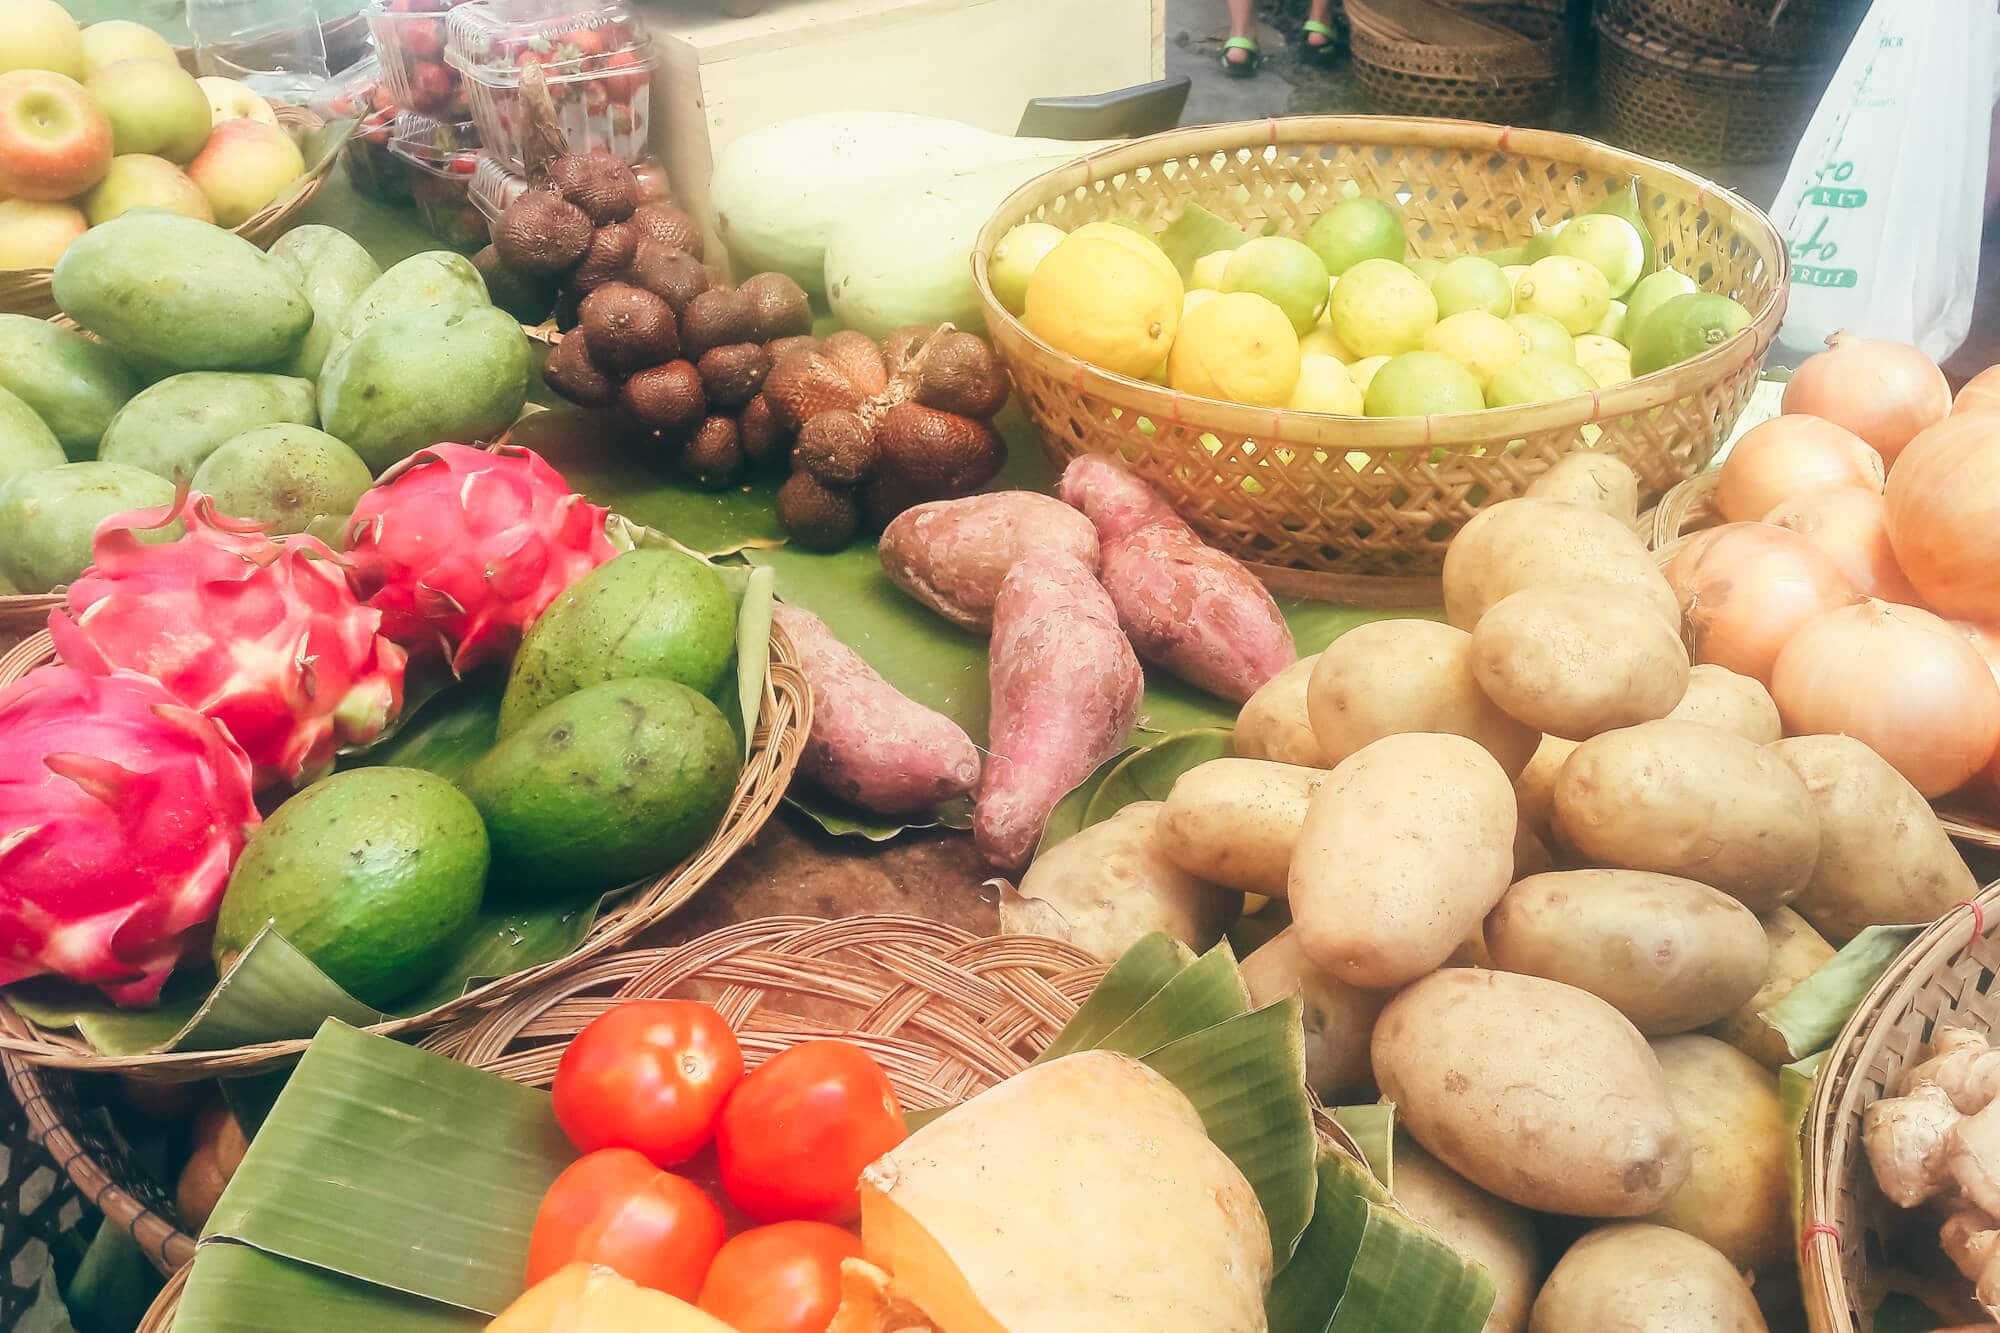 Fresh and organic produce at Samadi Market in Canggu